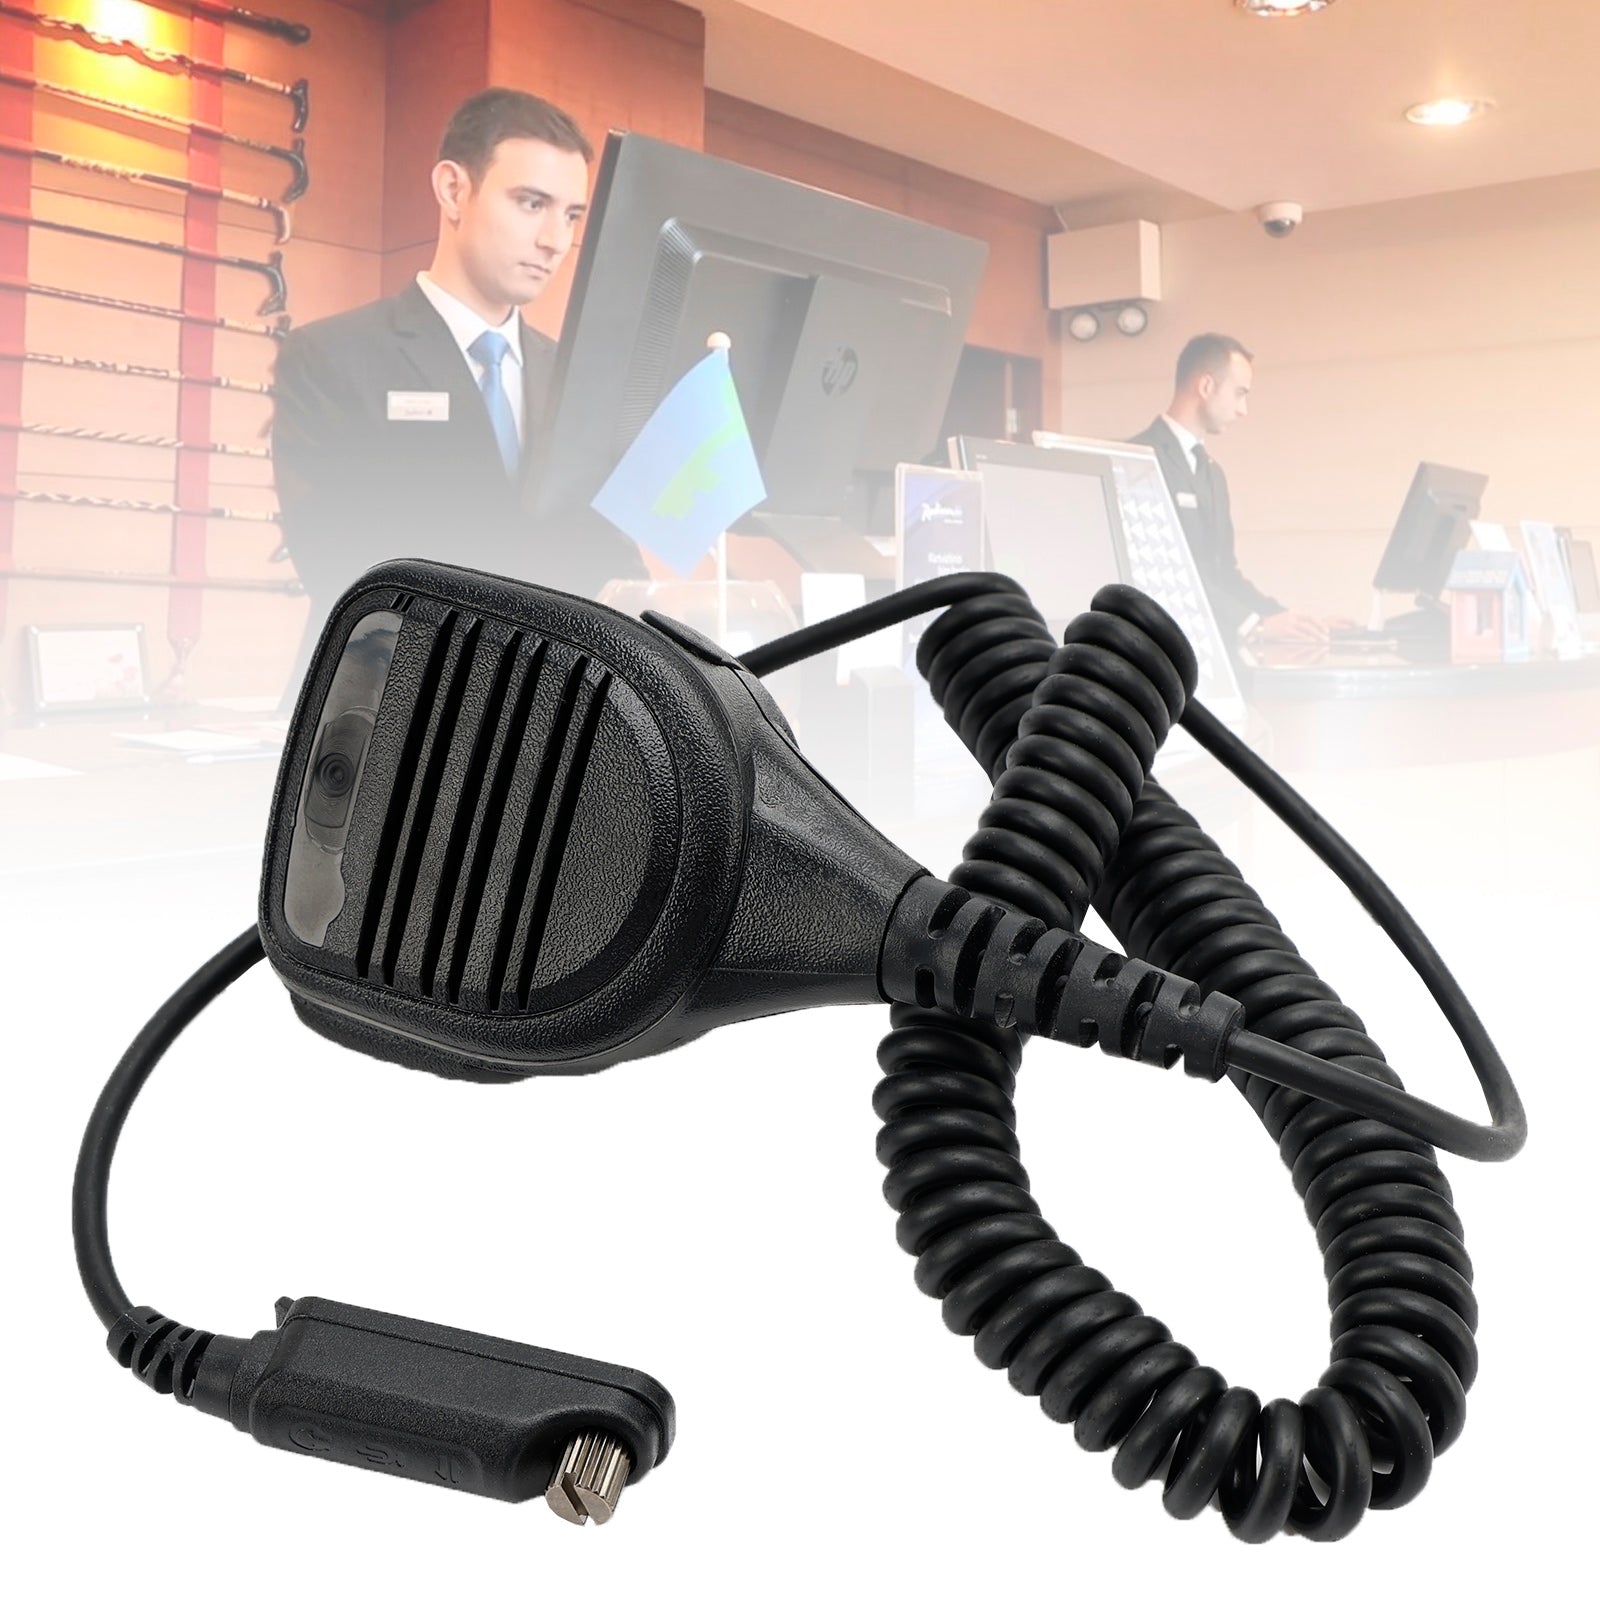 Altoparlante microfono portatile PH790-SM08 compatibile con la radio walkie-talkie Caltta PH790